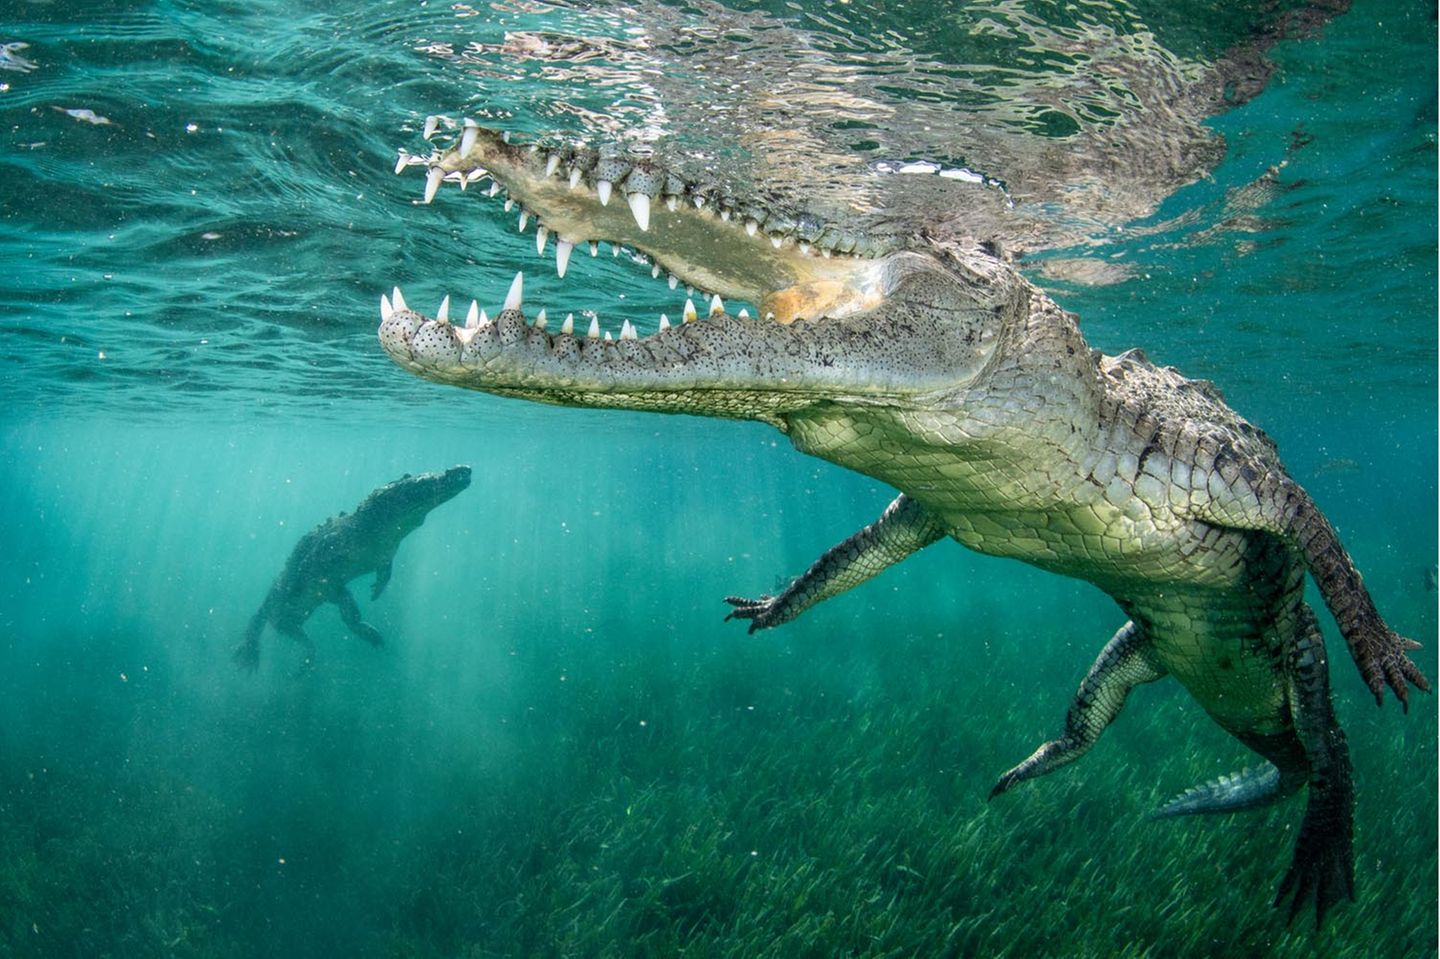 Zwei Krokodile in hellblauem Wasser. Das eine ist sehr nah und hat sein Maul offen